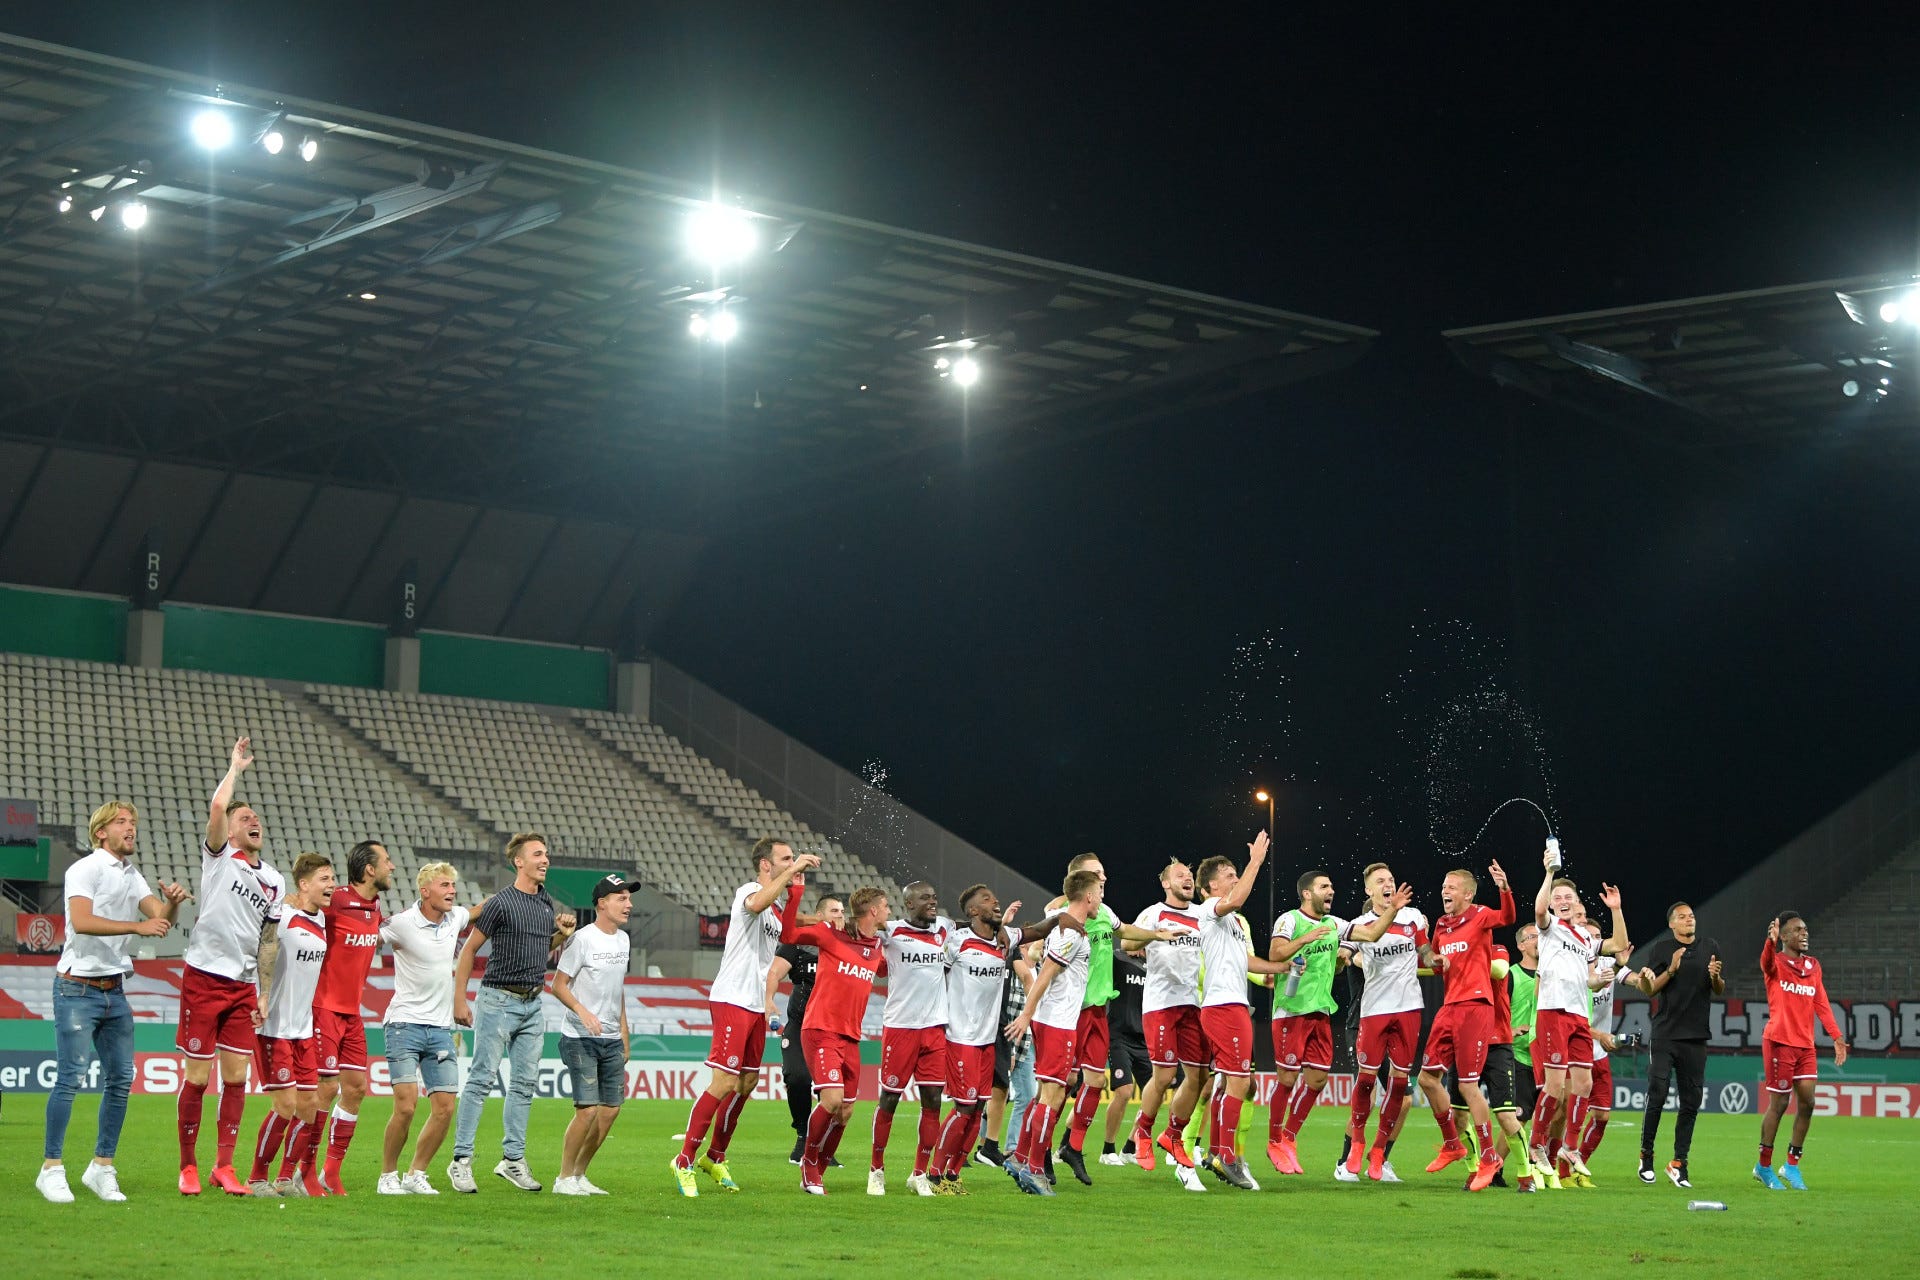 Rot-Weiss Essen gegen Bayer Leverkusen heute live im TV und LIVE-STREAM sehen So wird der DFB-Pokal live übertragen Goal Deutschland